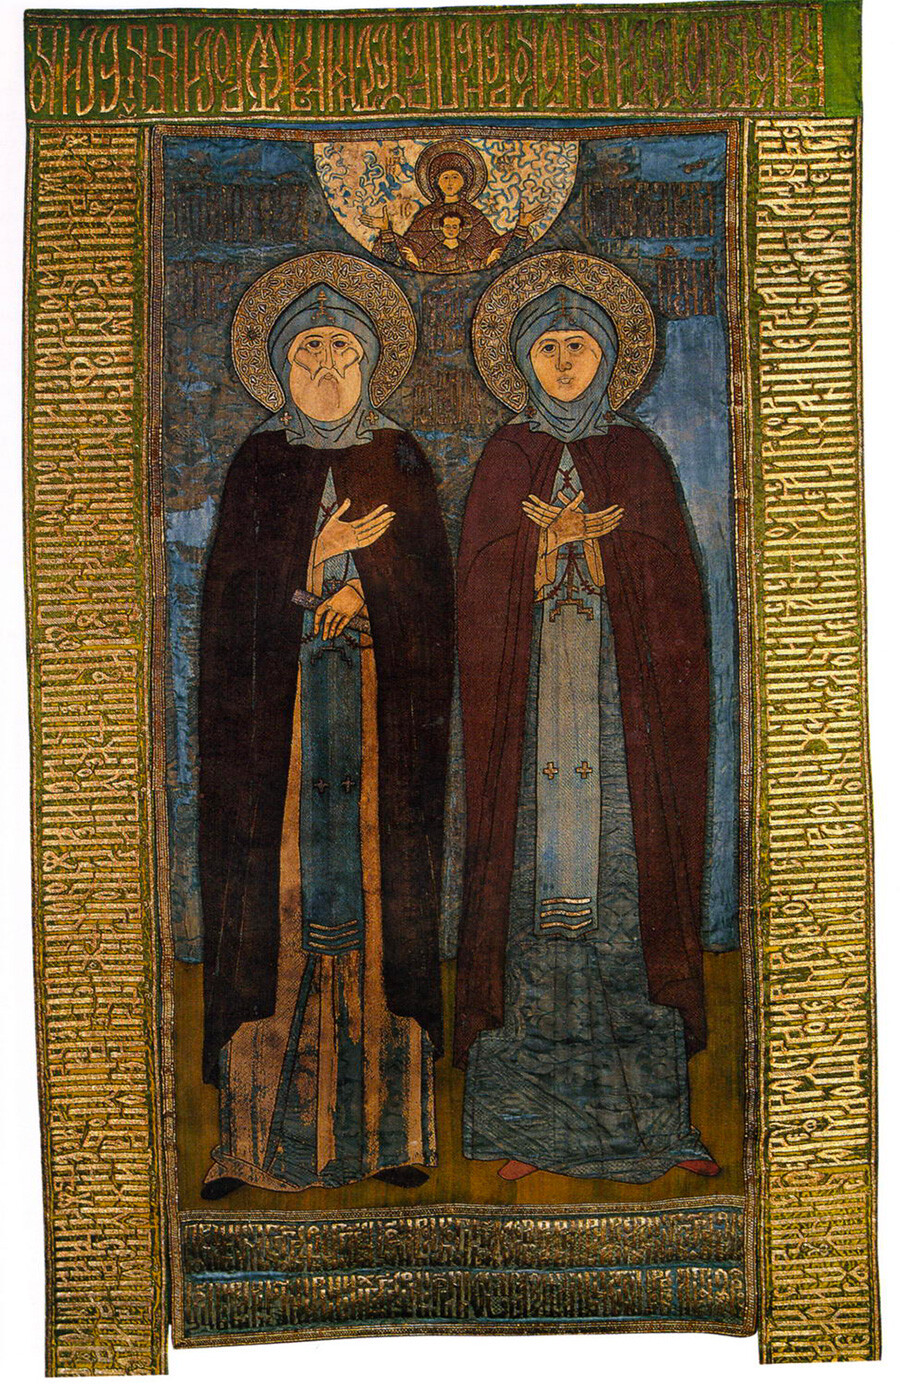 Copertura per il santuario di Pietro e Fevronia. Contributo alla Cattedrale della Natività di Murom da parte dello zar Fjodor e della zarina Irina, 1593